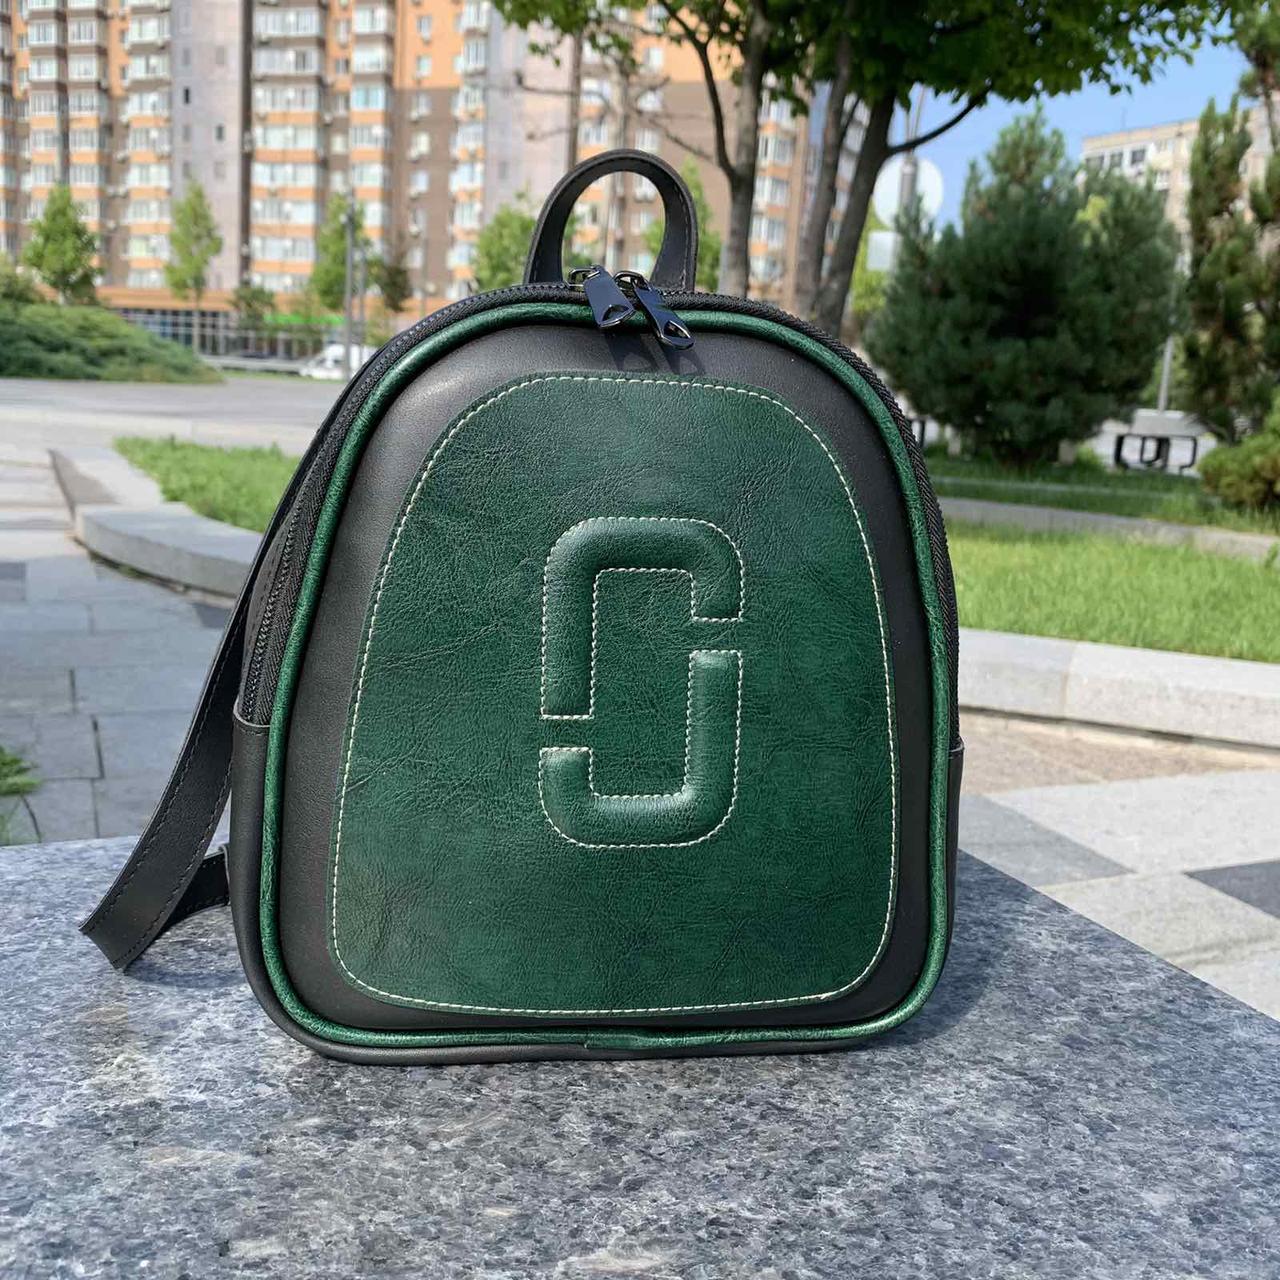 Жіночий міський рюкзак-сумка трансформер, маленький якісний рюкзачок Зелено-чорний